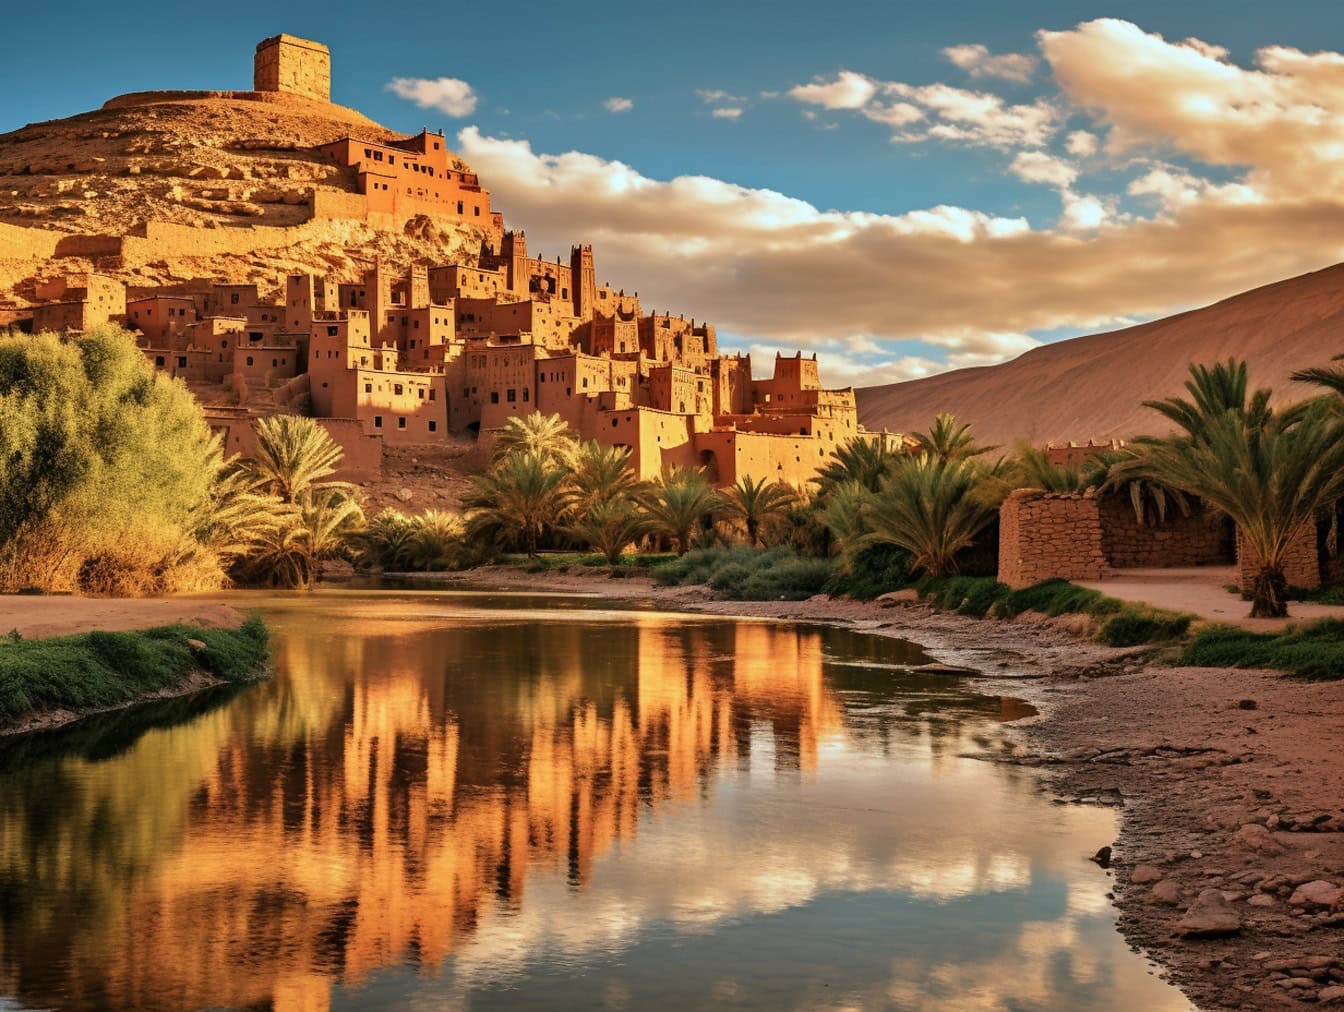 Stadtbild von Ait Benhaddou in Marokko, einer berühmten mittelalterlichen Stadt im traditionellen afrikanischen Architekturstil mit einer Oase mit Palmen